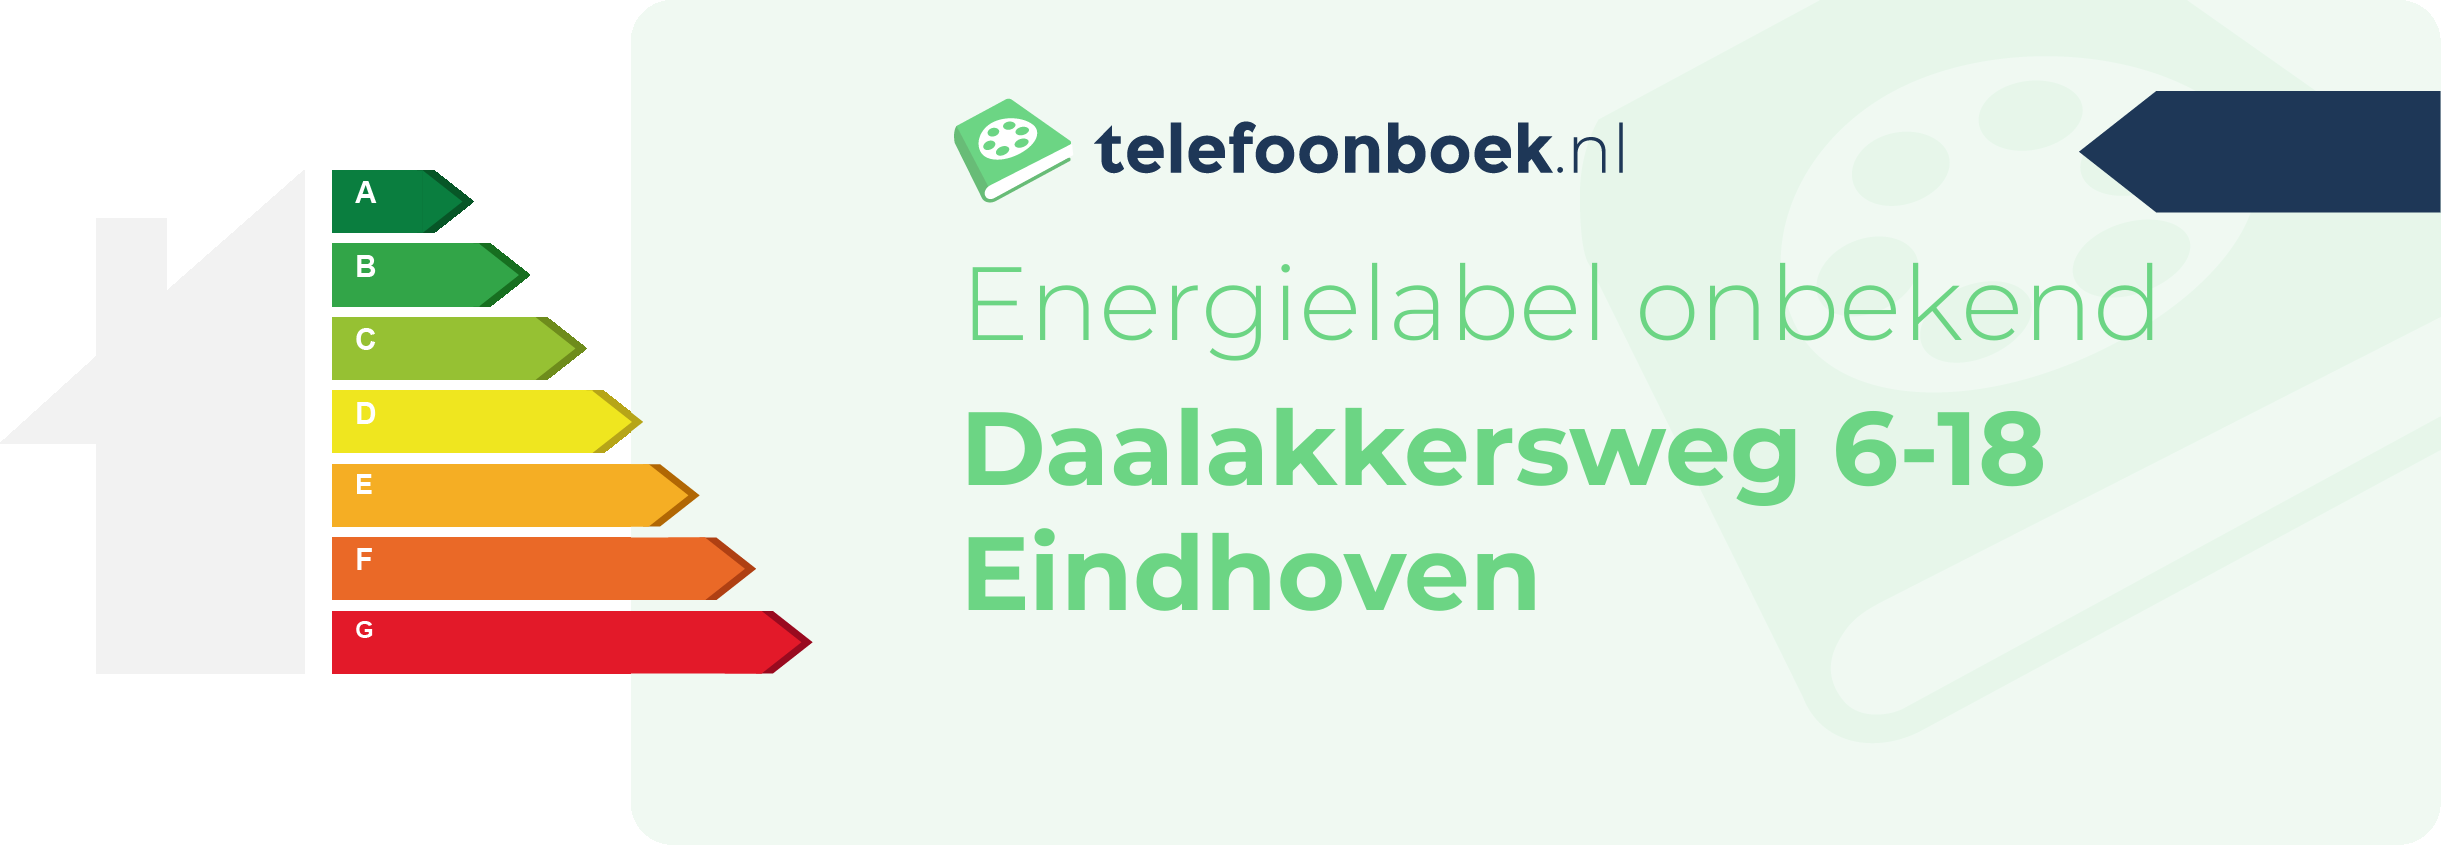 Energielabel Daalakkersweg 6-18 Eindhoven